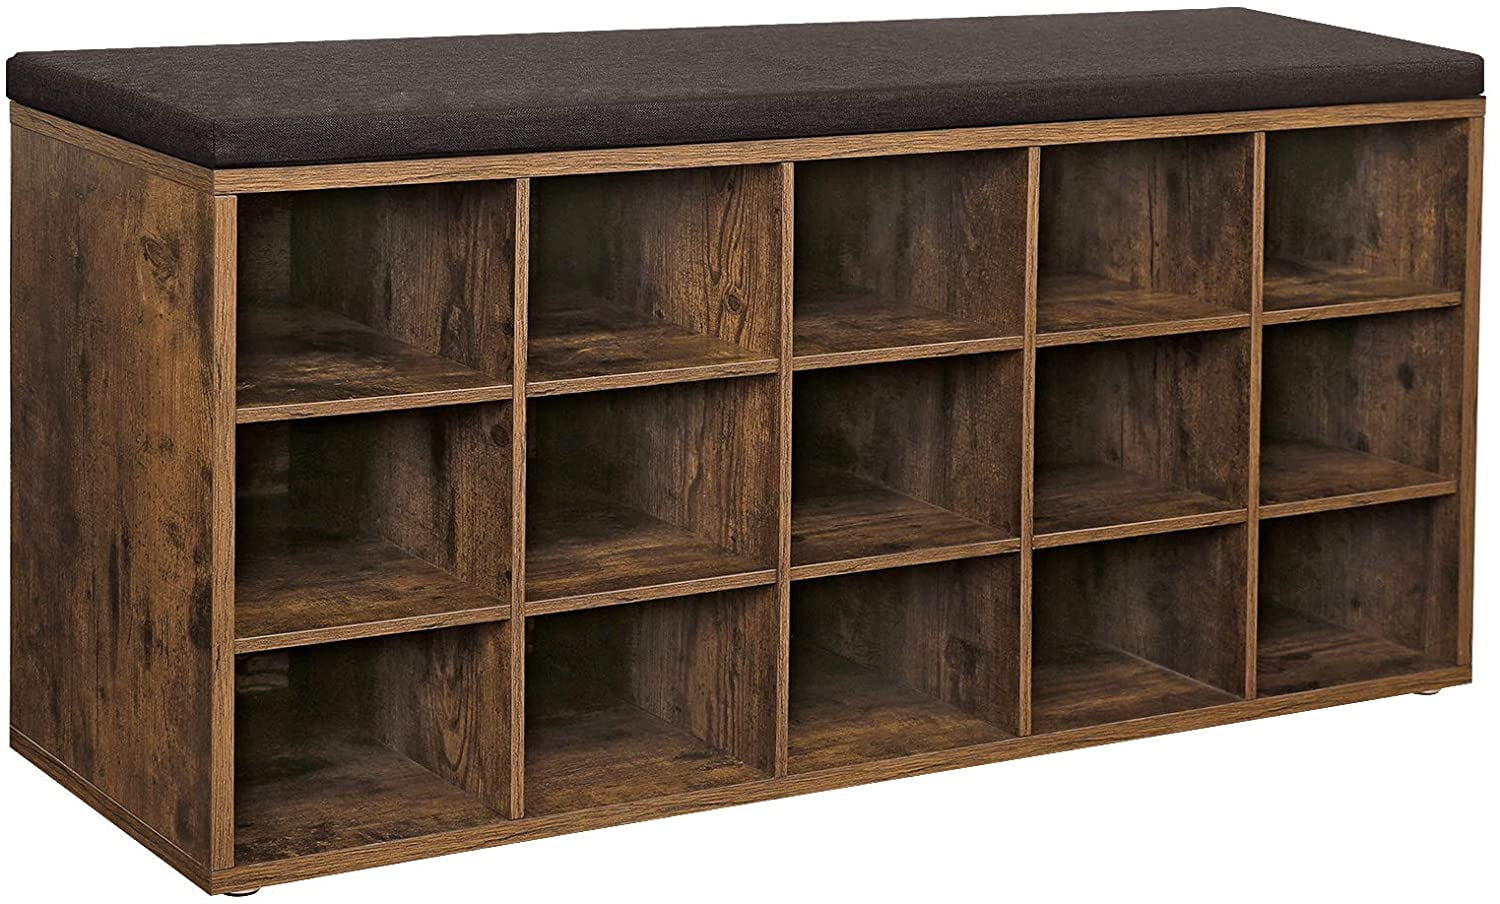 Cubbie Shoe Cabinet Storage Bench With, Cubbie Shoe Cabinet Storage Bench With Cushion Adjustable Shelves